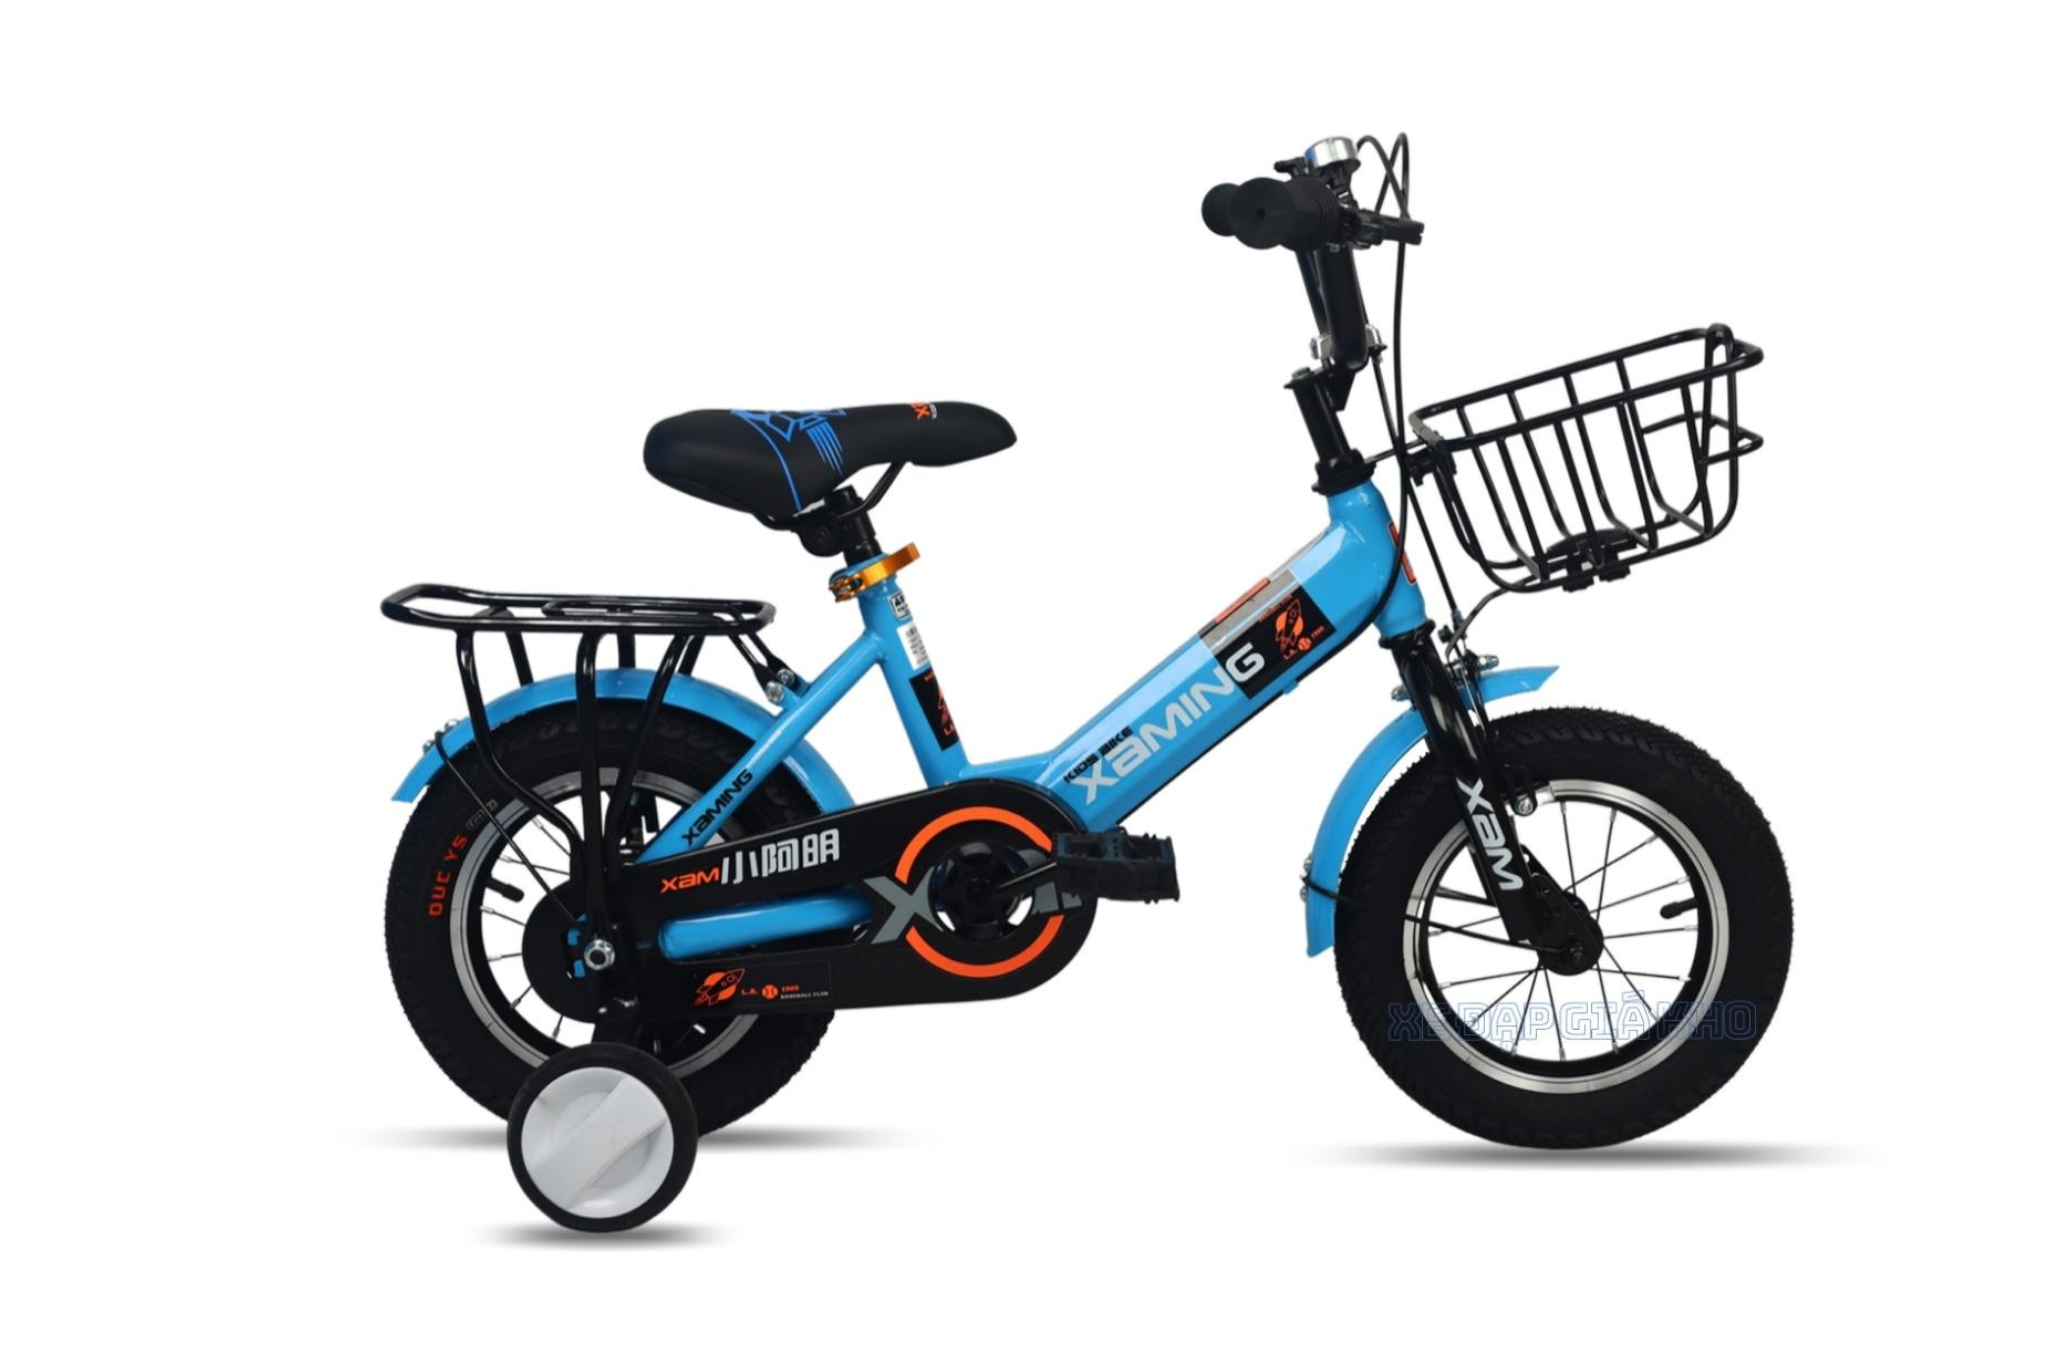 Xe đạp trẻ em XAMING Baga 14 inch khuyến mãi, giá rẻ